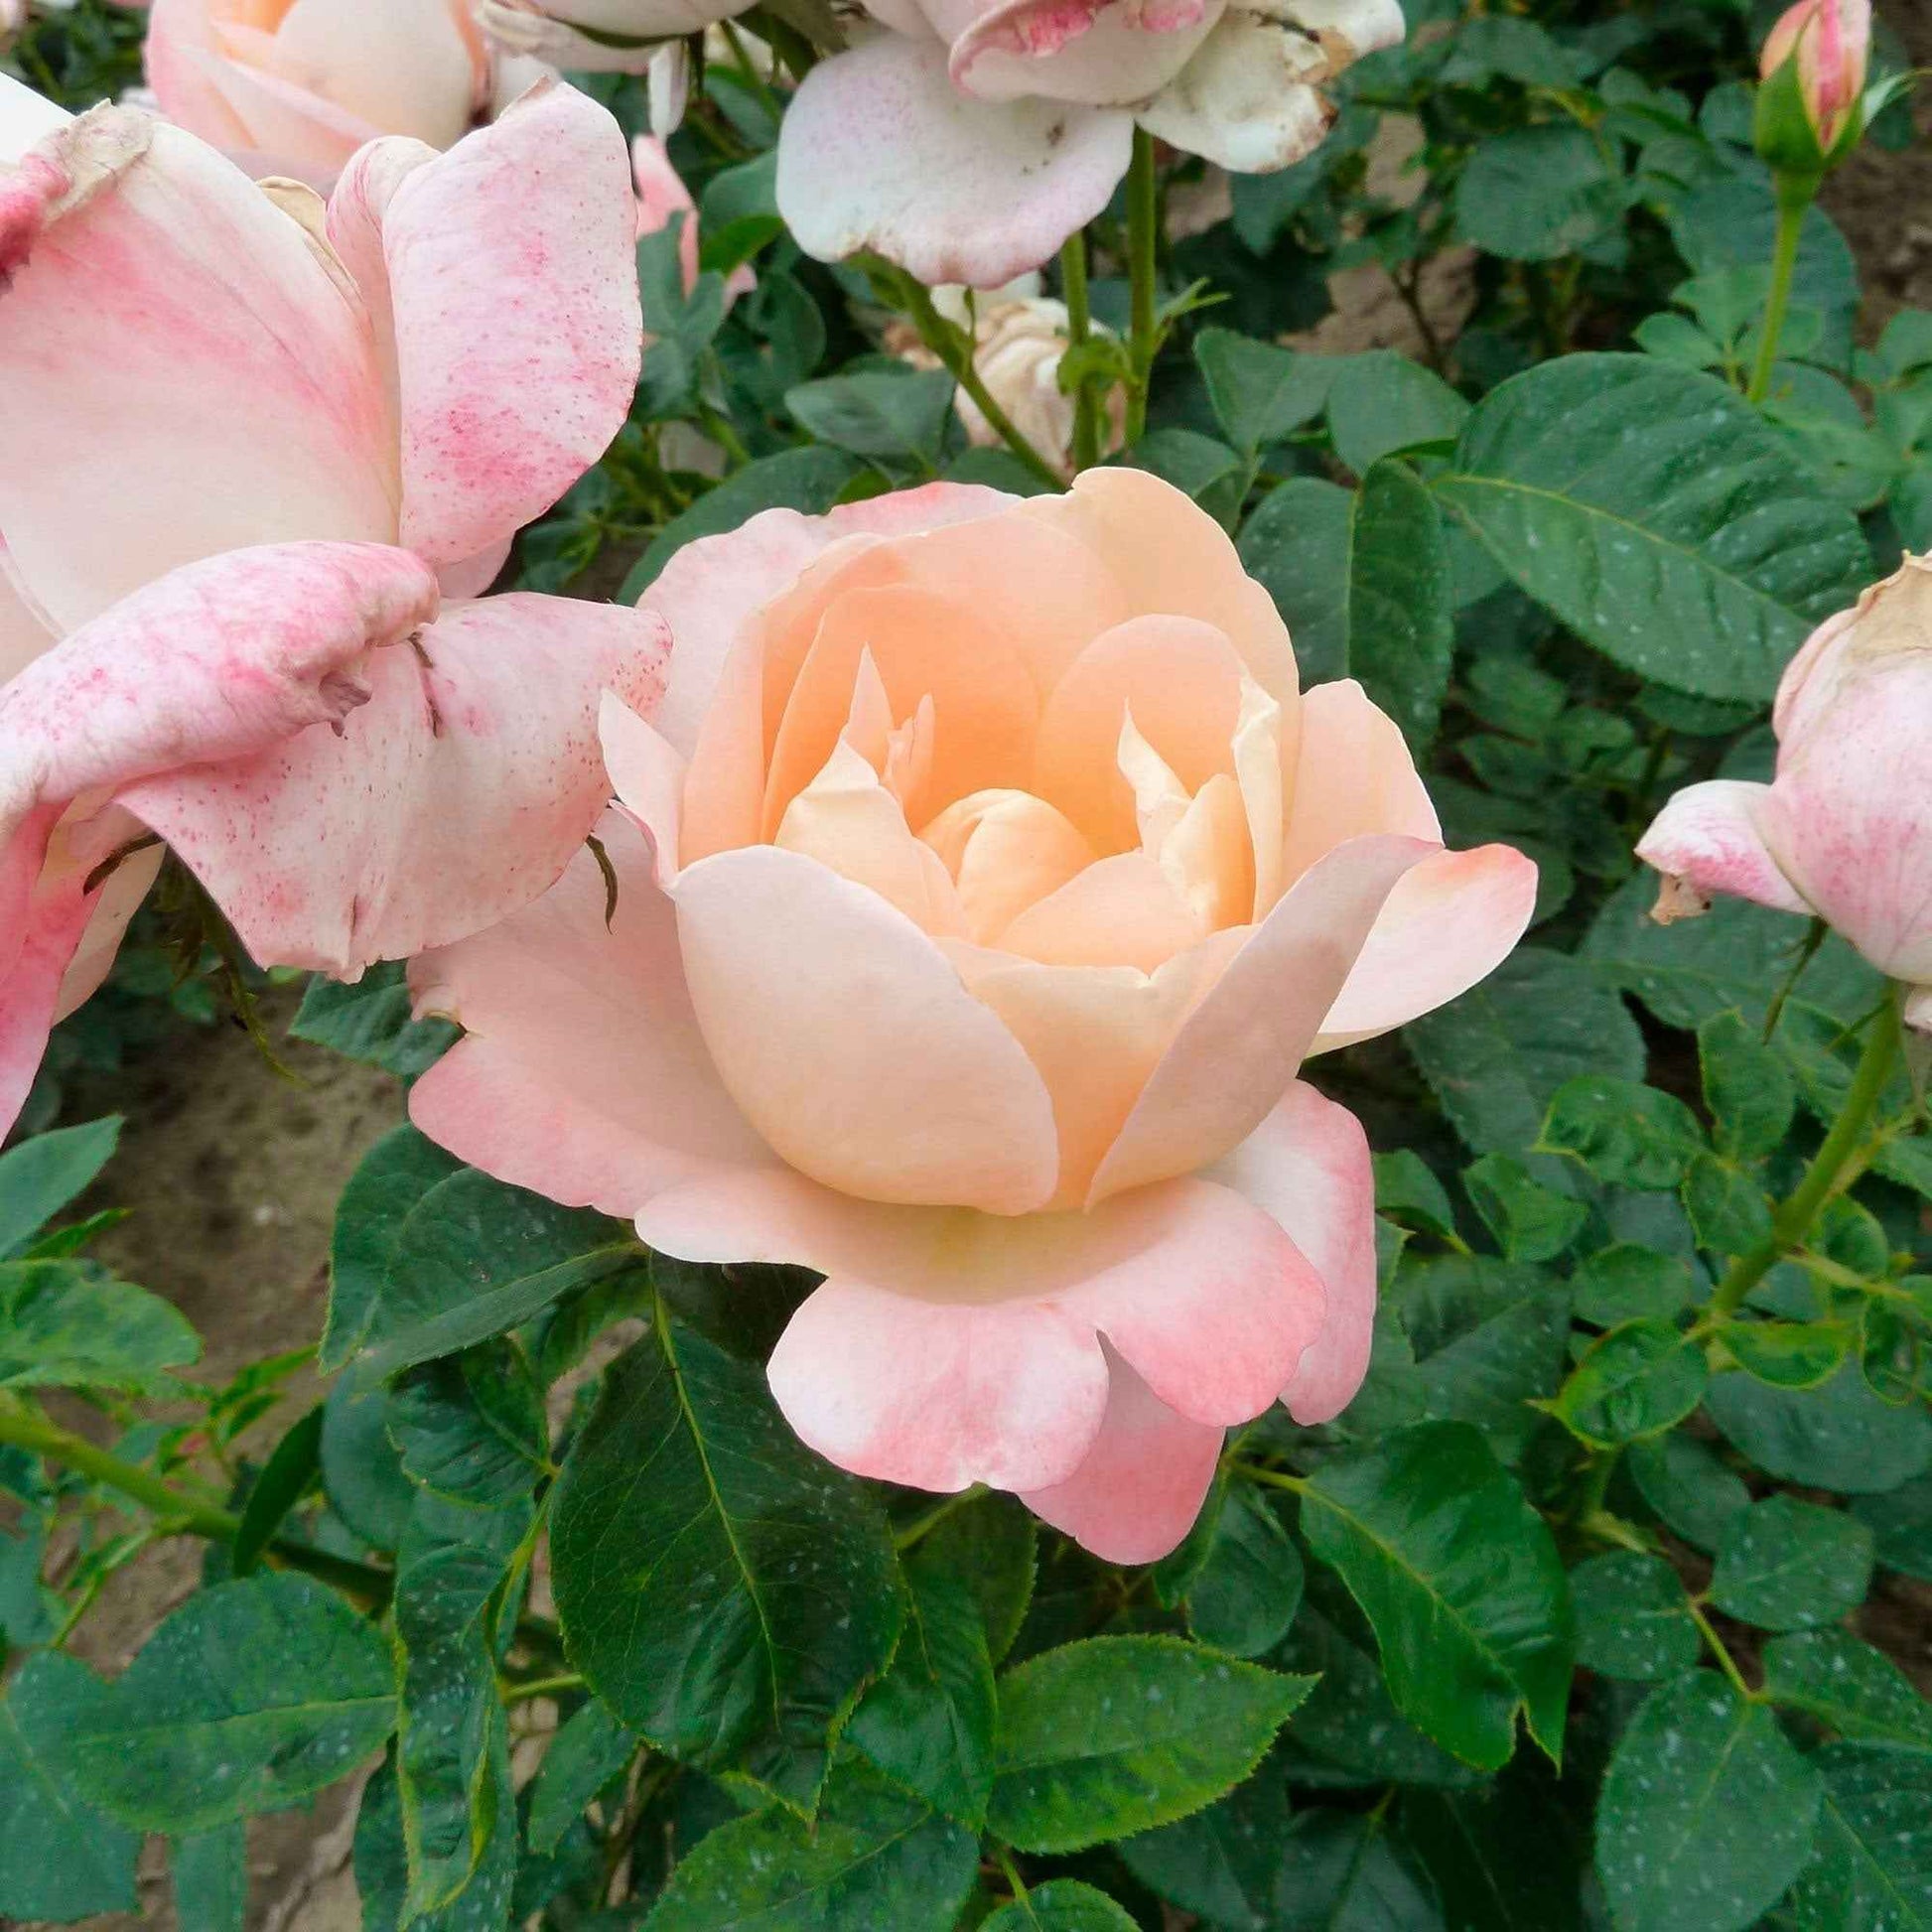 3x Grootbloemige roos Rosa 'Isabelle Autissier'® Geel-Roze  - Bare rooted - Winterhard - Grootbloemige rozen